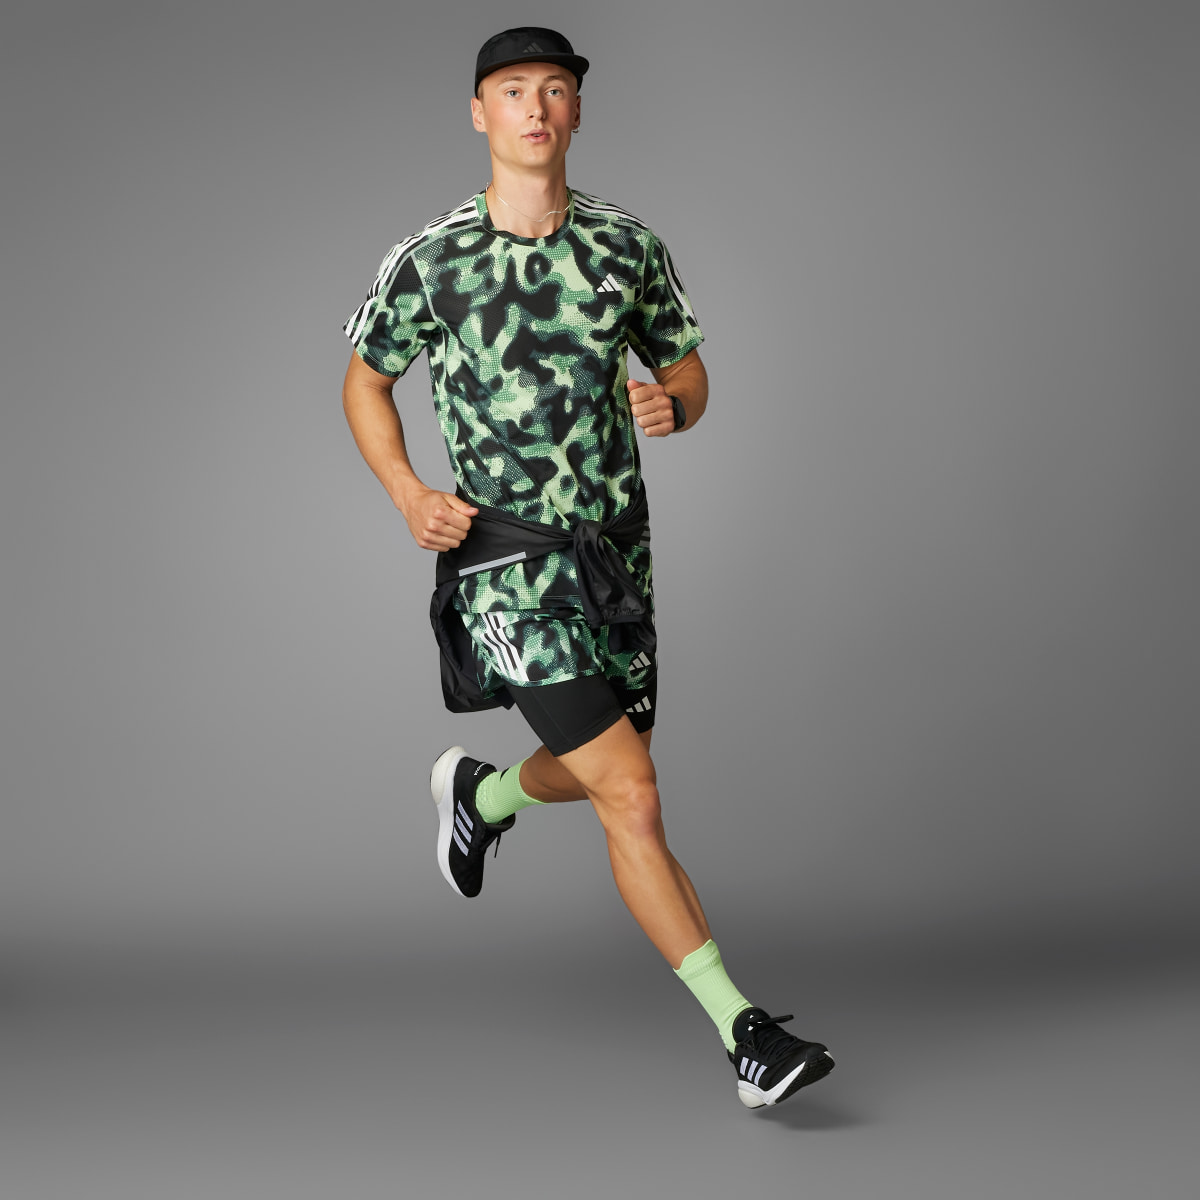 Adidas Own the Run 3-Stripes Allover Print T-Shirt. 10